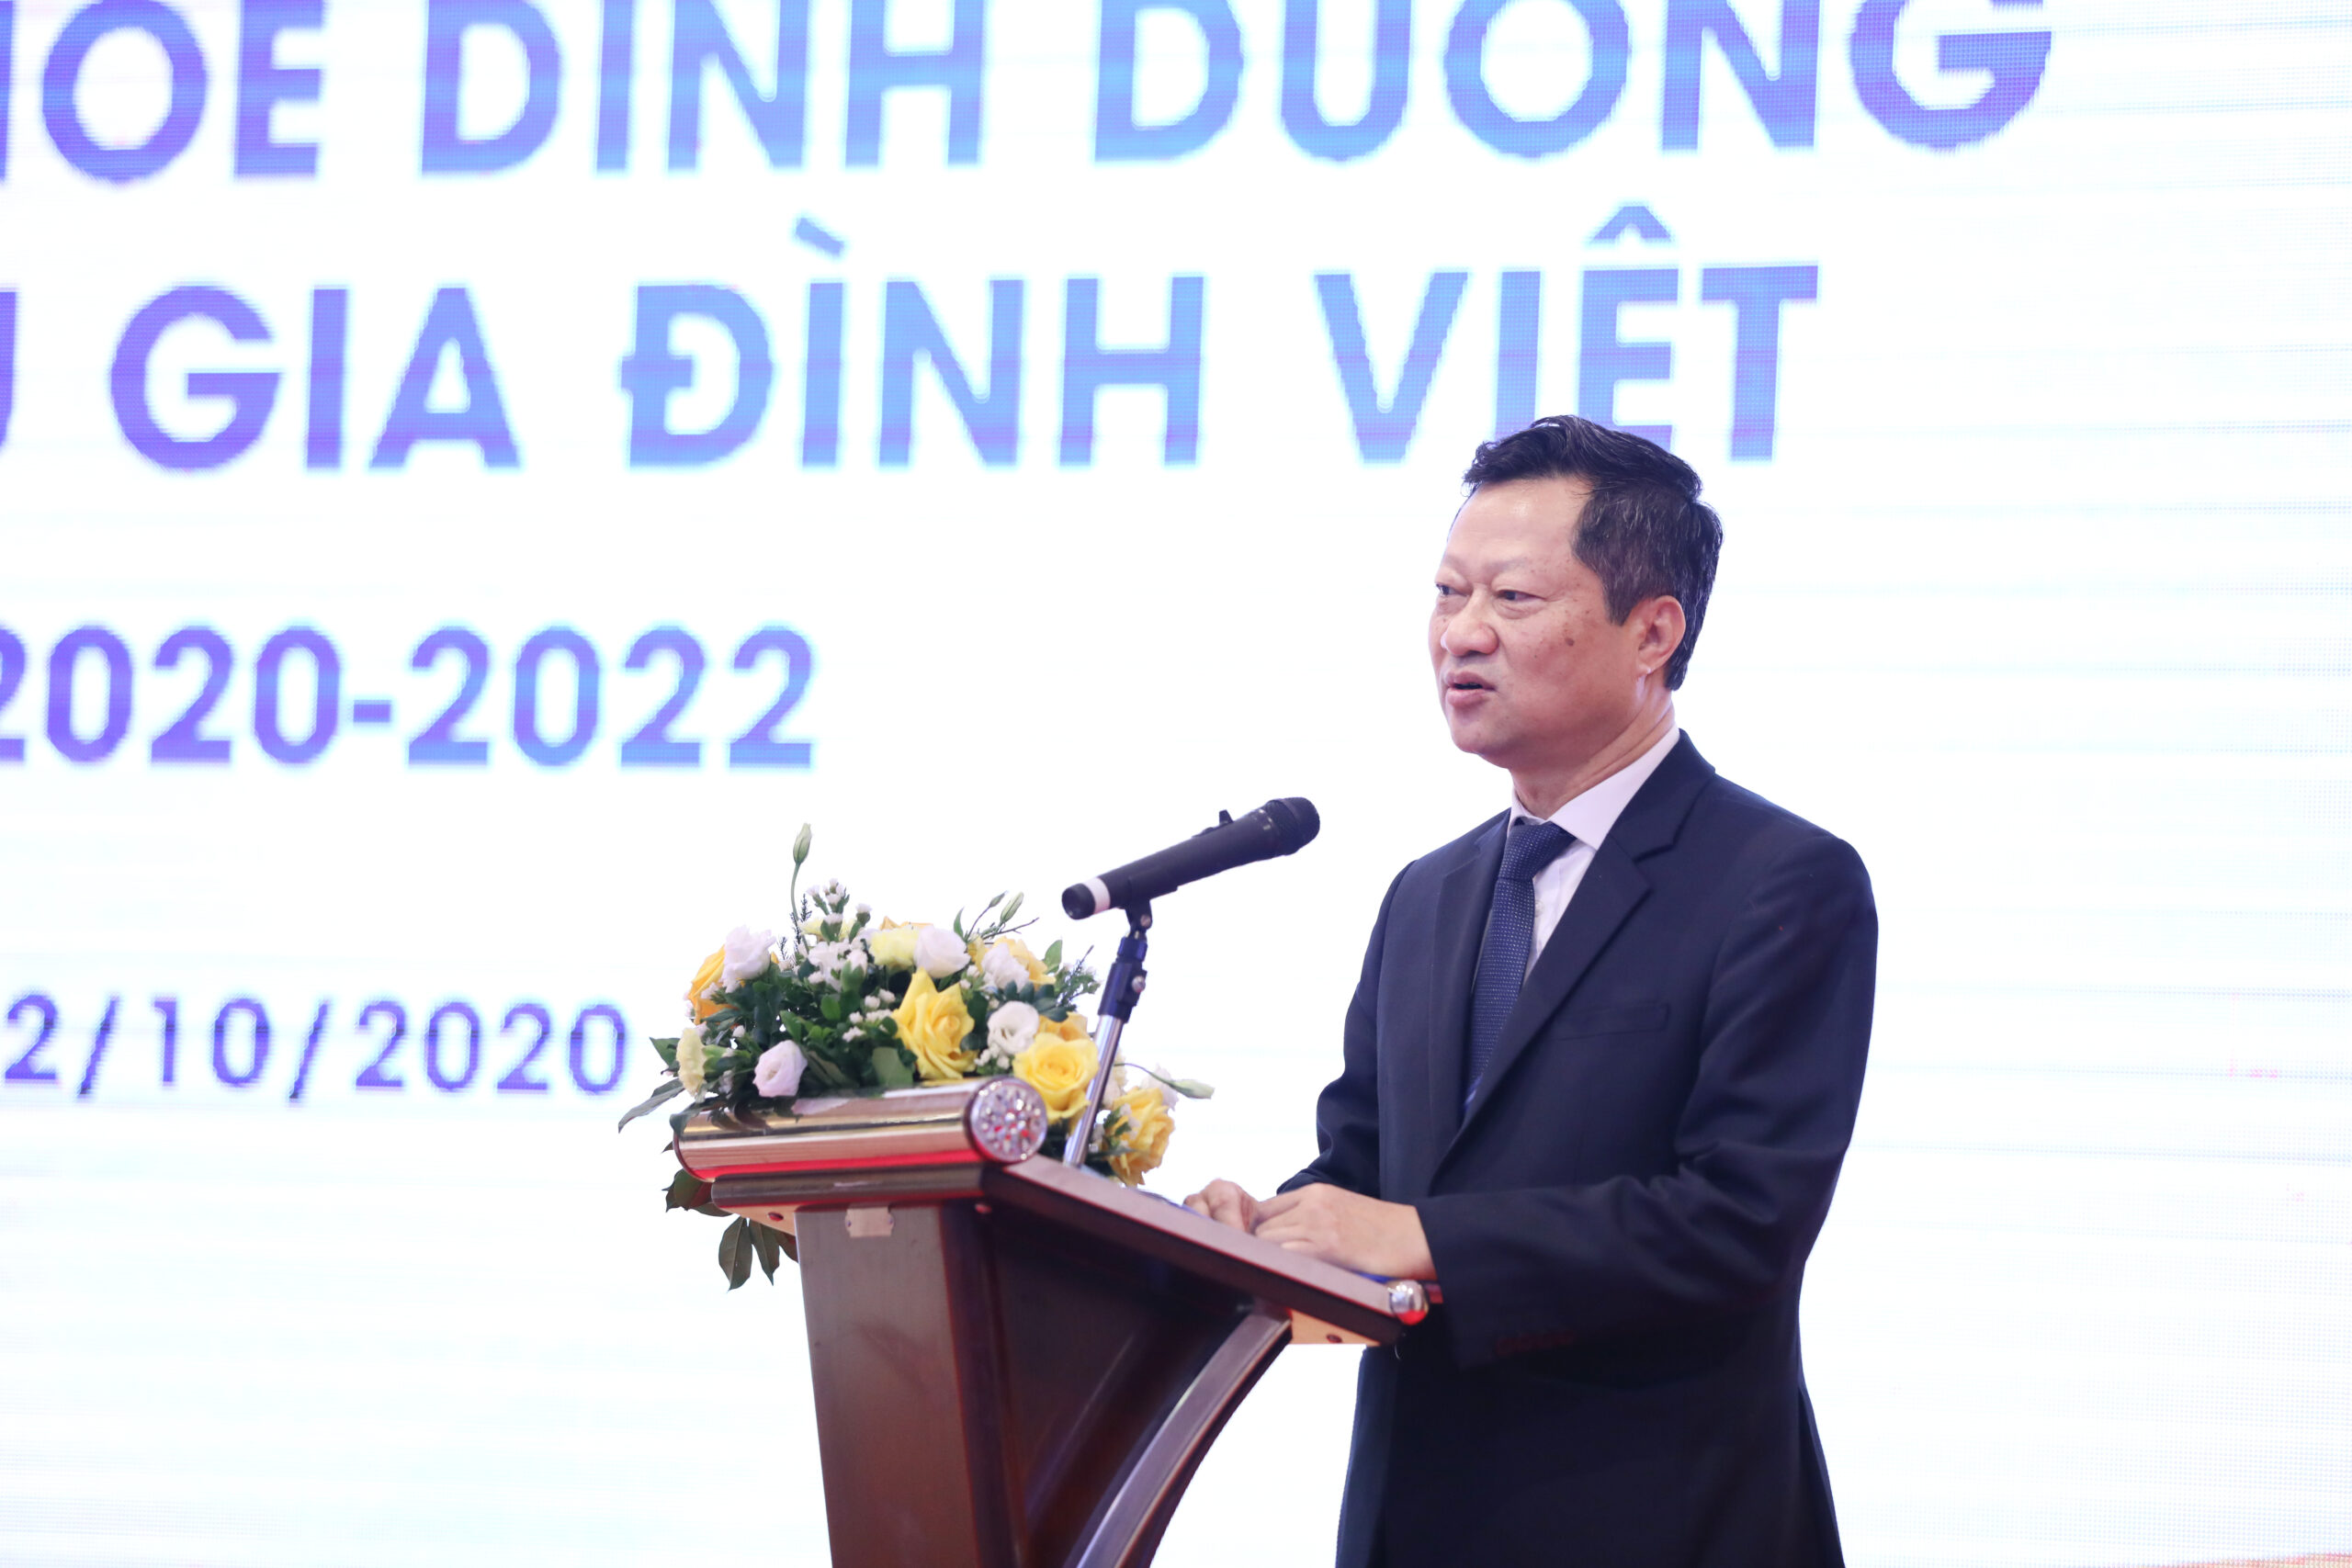 : Ông Hoàng Văn Thành, Chủ tịch CLB ĐDT Việt Nam phát biểu về mục đích của hợp tác với Vinamilk và các lợi ích sẽ mang đến cho hội viên của CLB.